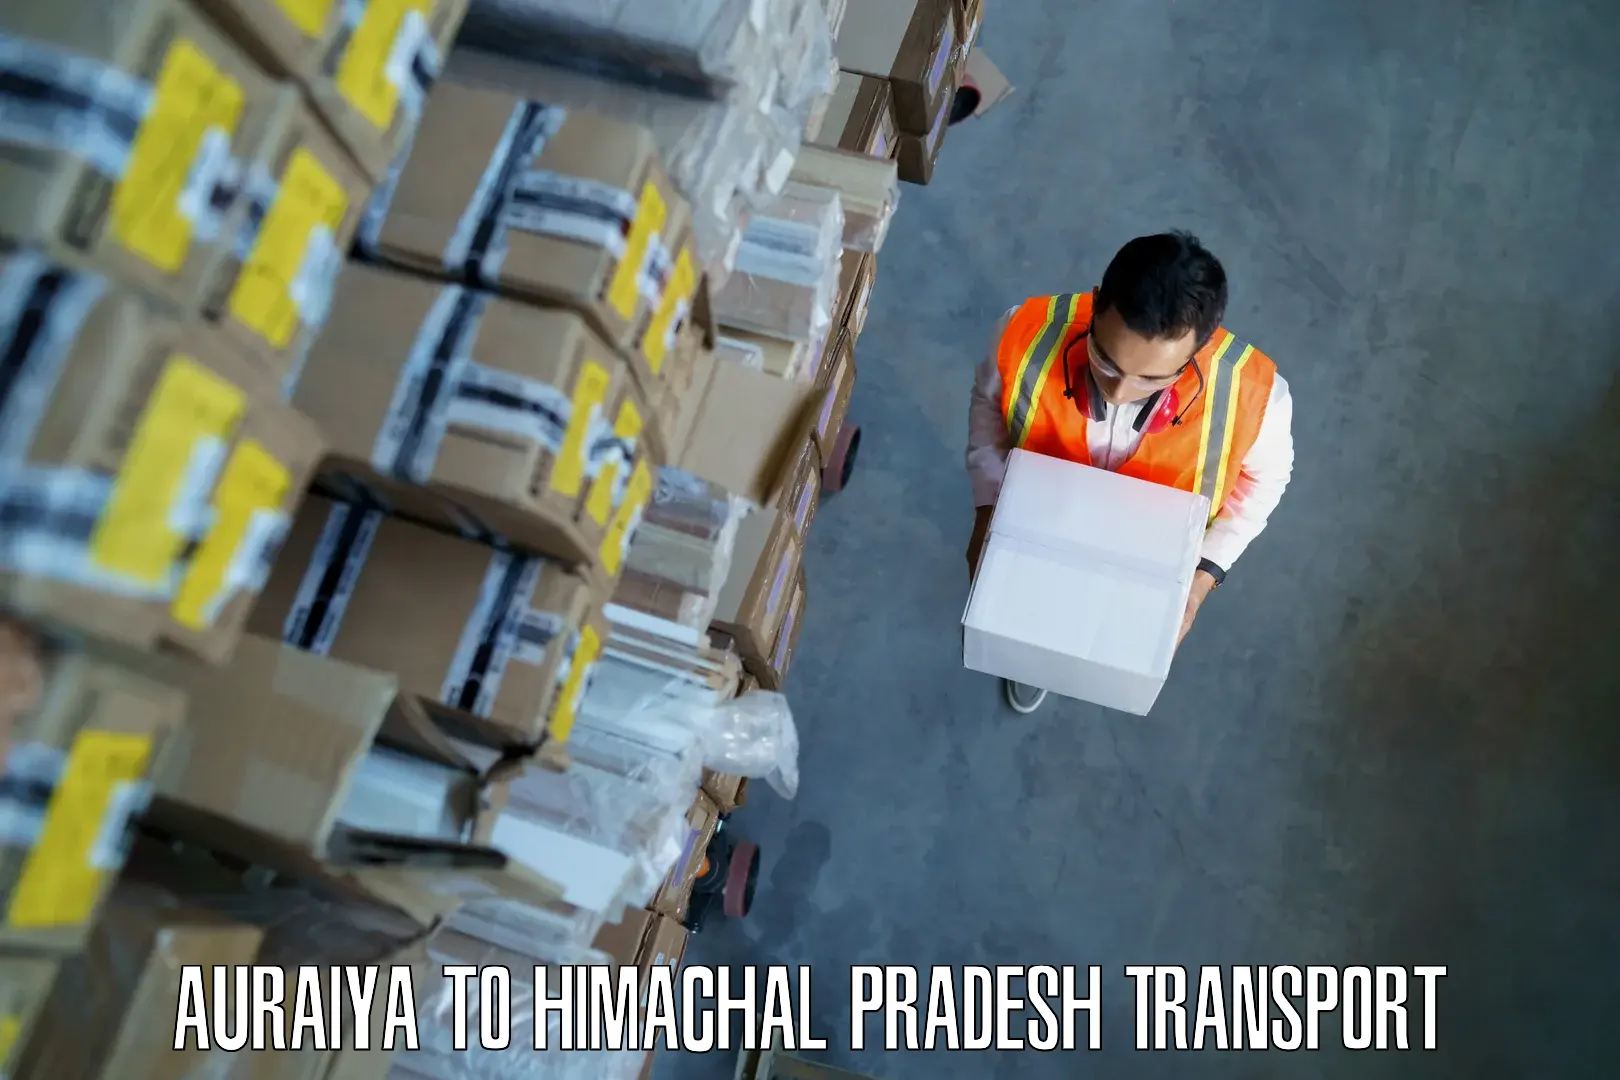 Container transport service Auraiya to Kalol Jhandutta